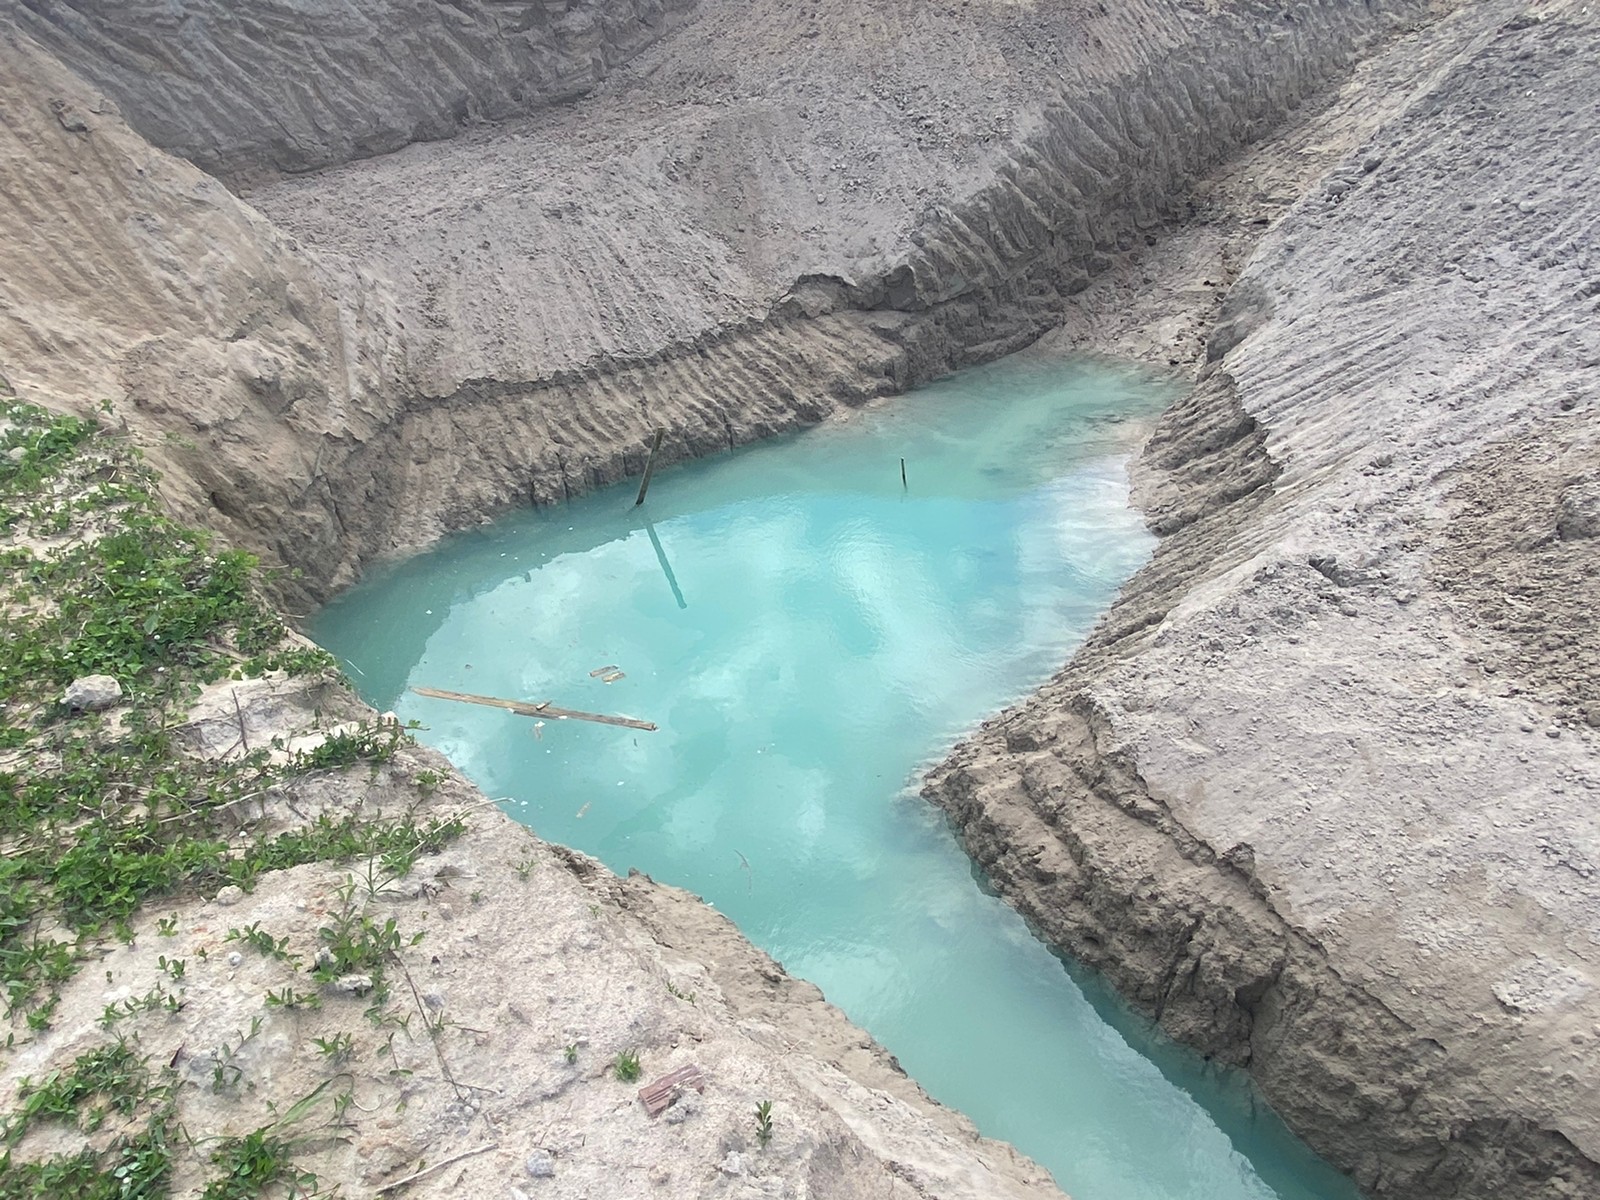 Caern atesta boa qualidade de água encontrada em escavação em Parnamirim e explica tonalidade